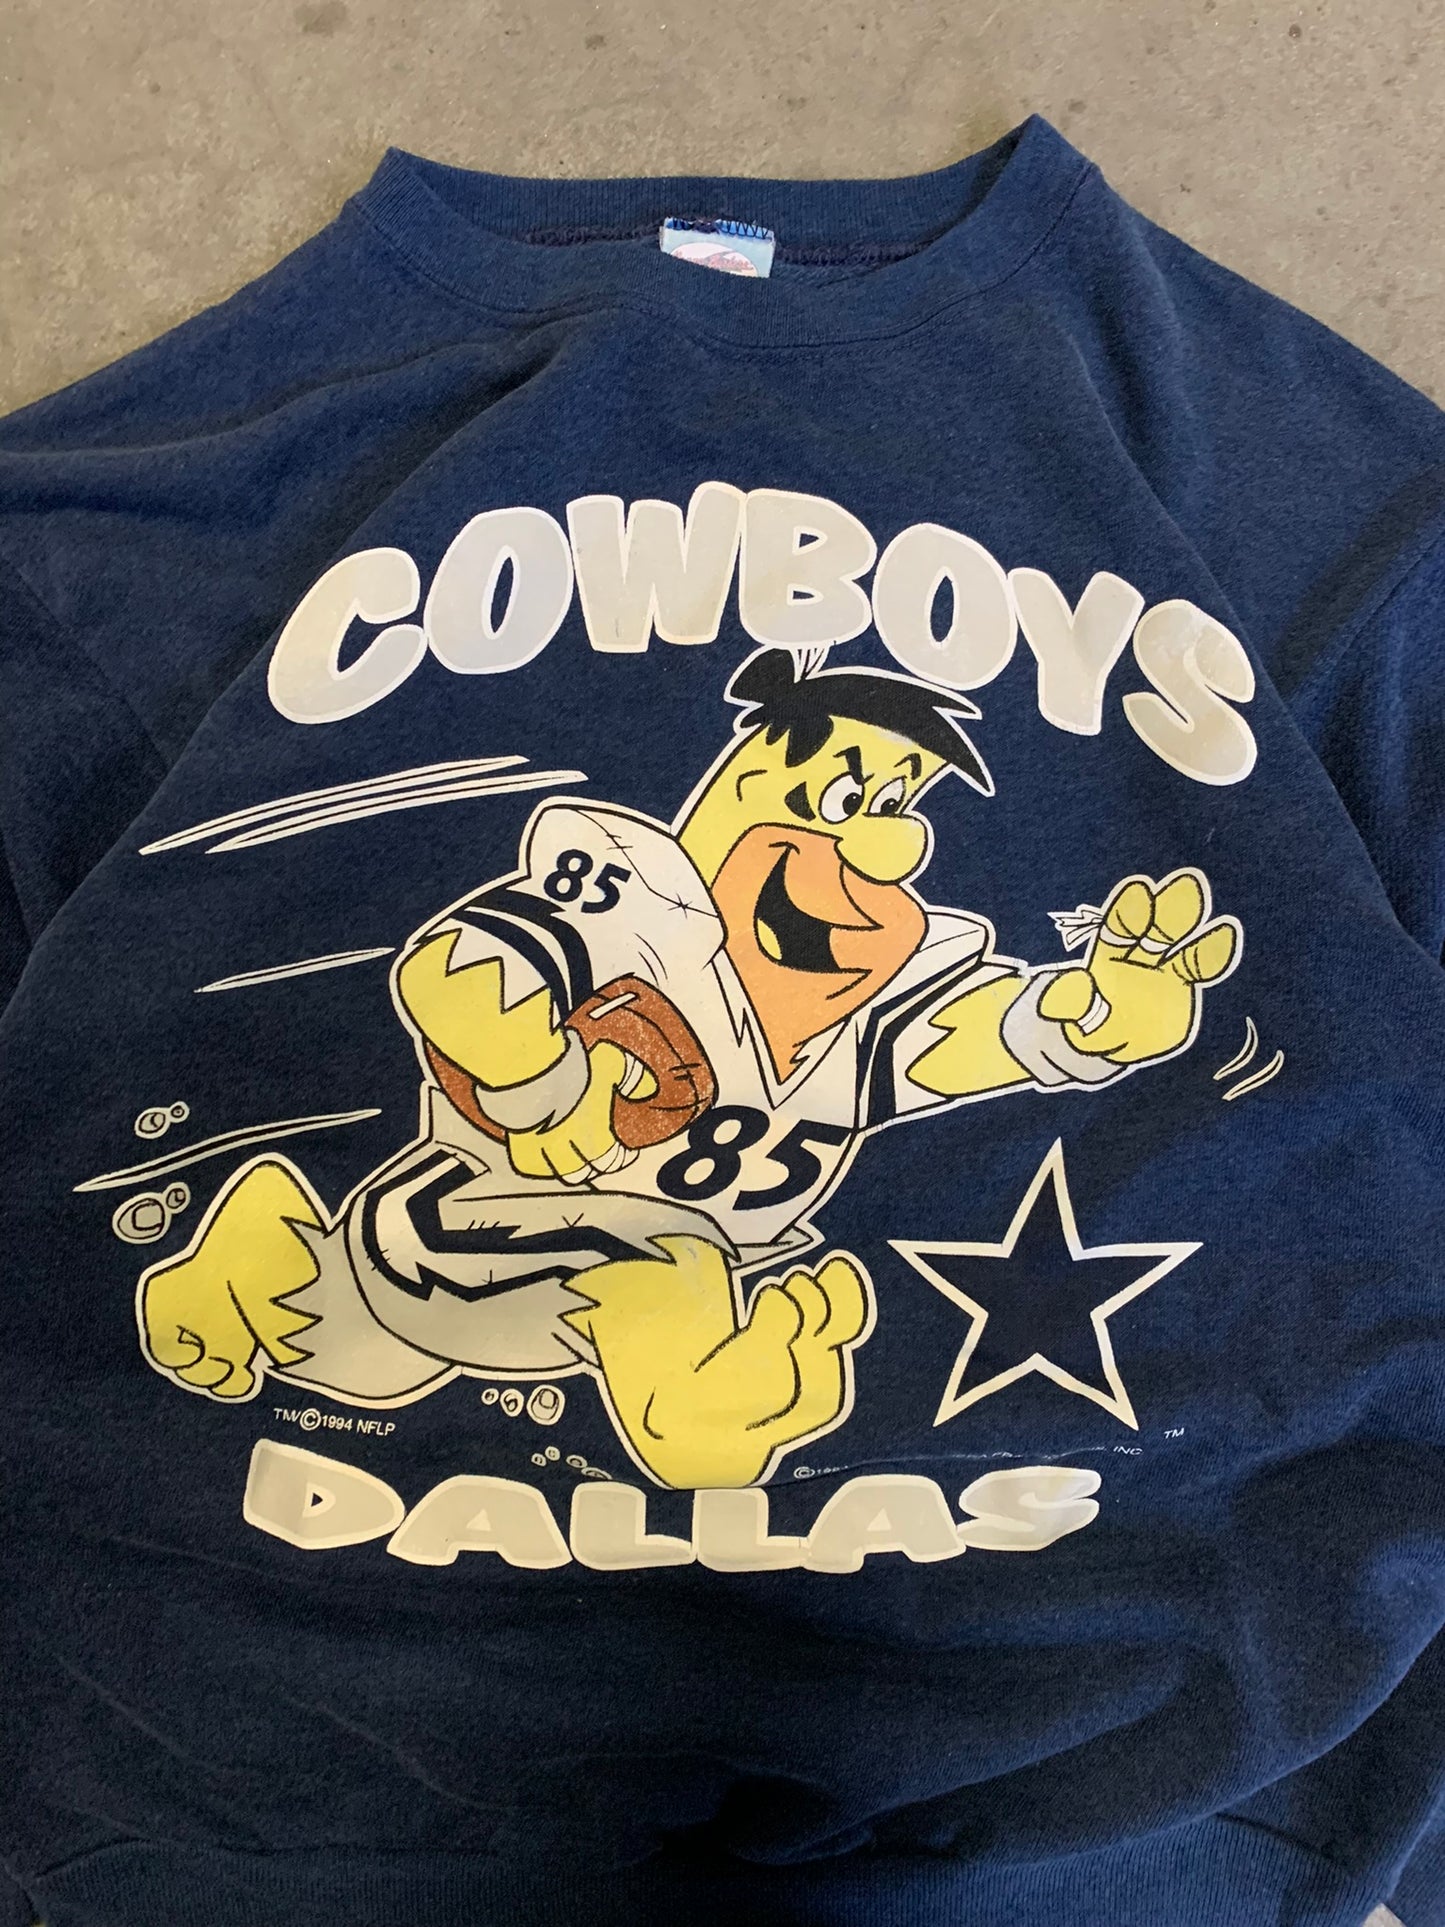 (S/M) 1994 Dallas Cowboys Crewneck